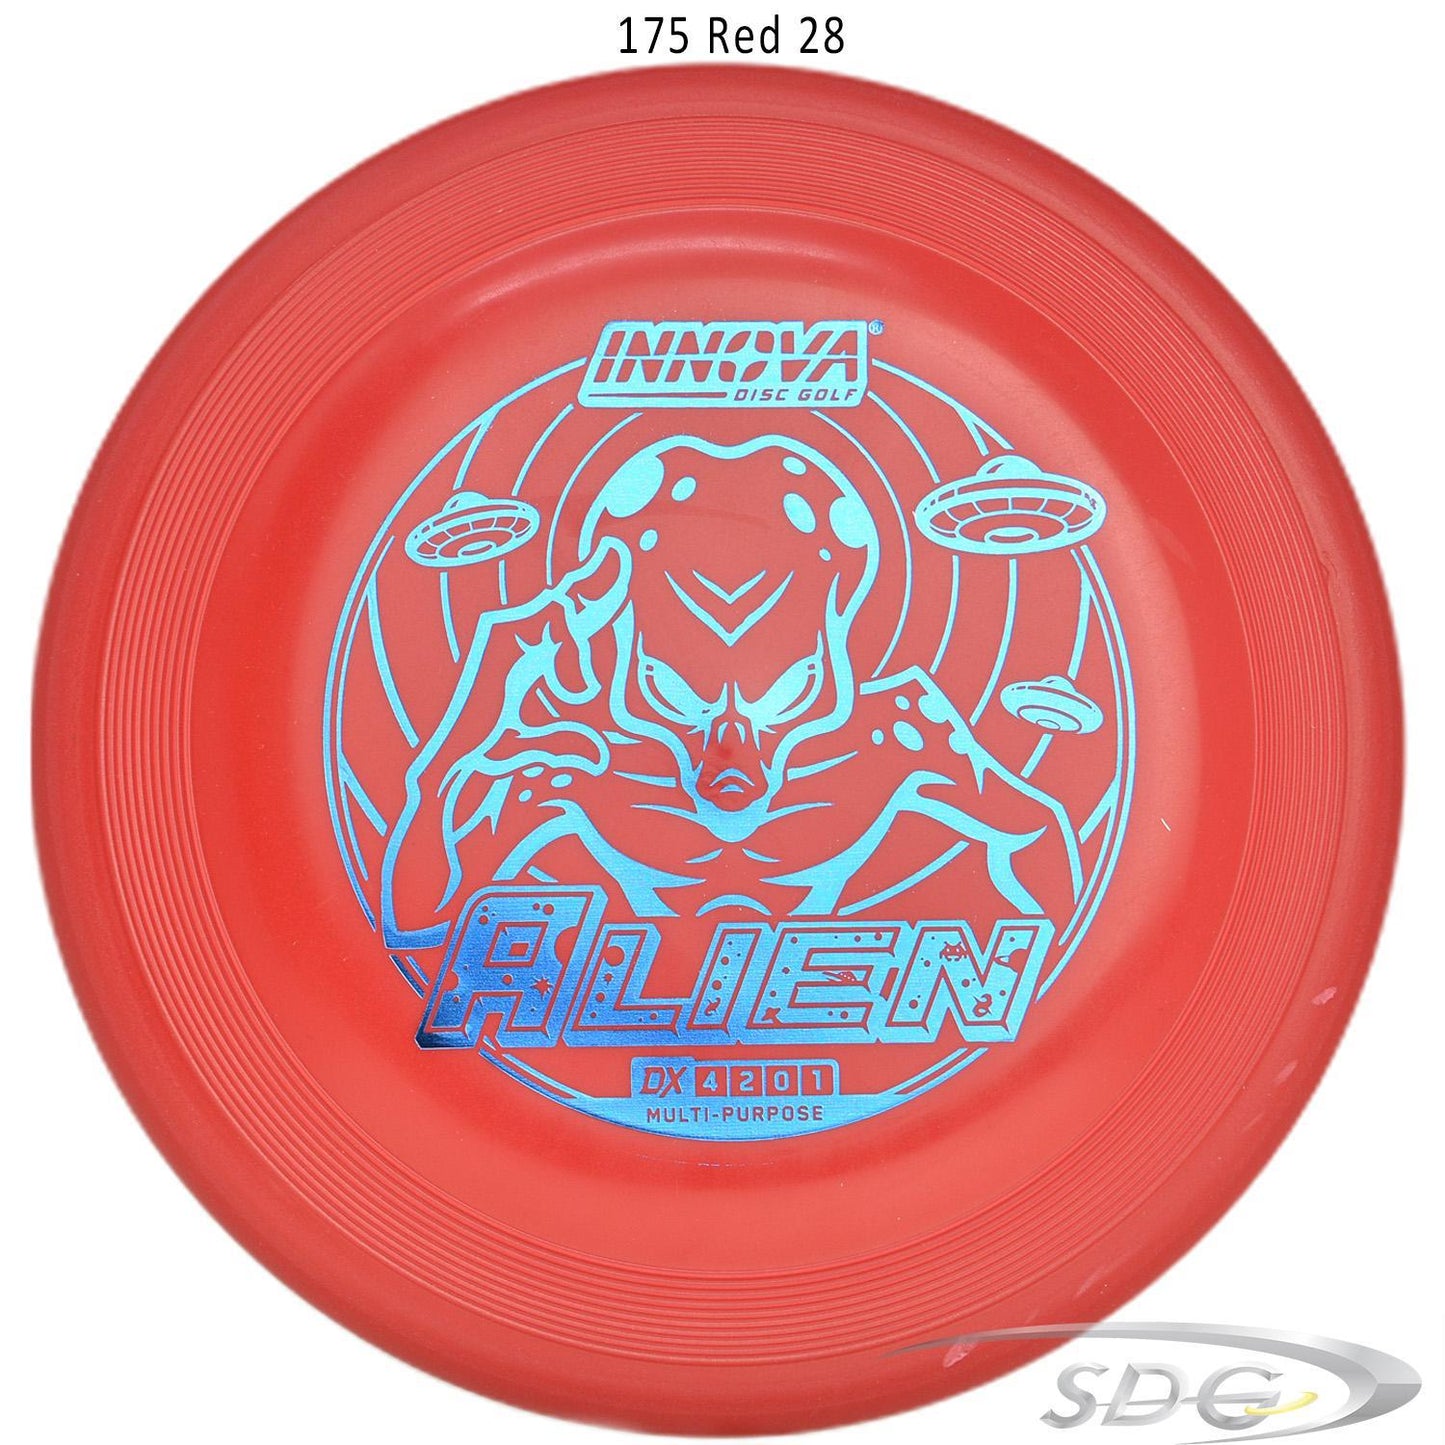 innova-dx-alien-disc-golf-mid-range 175 Red 28 